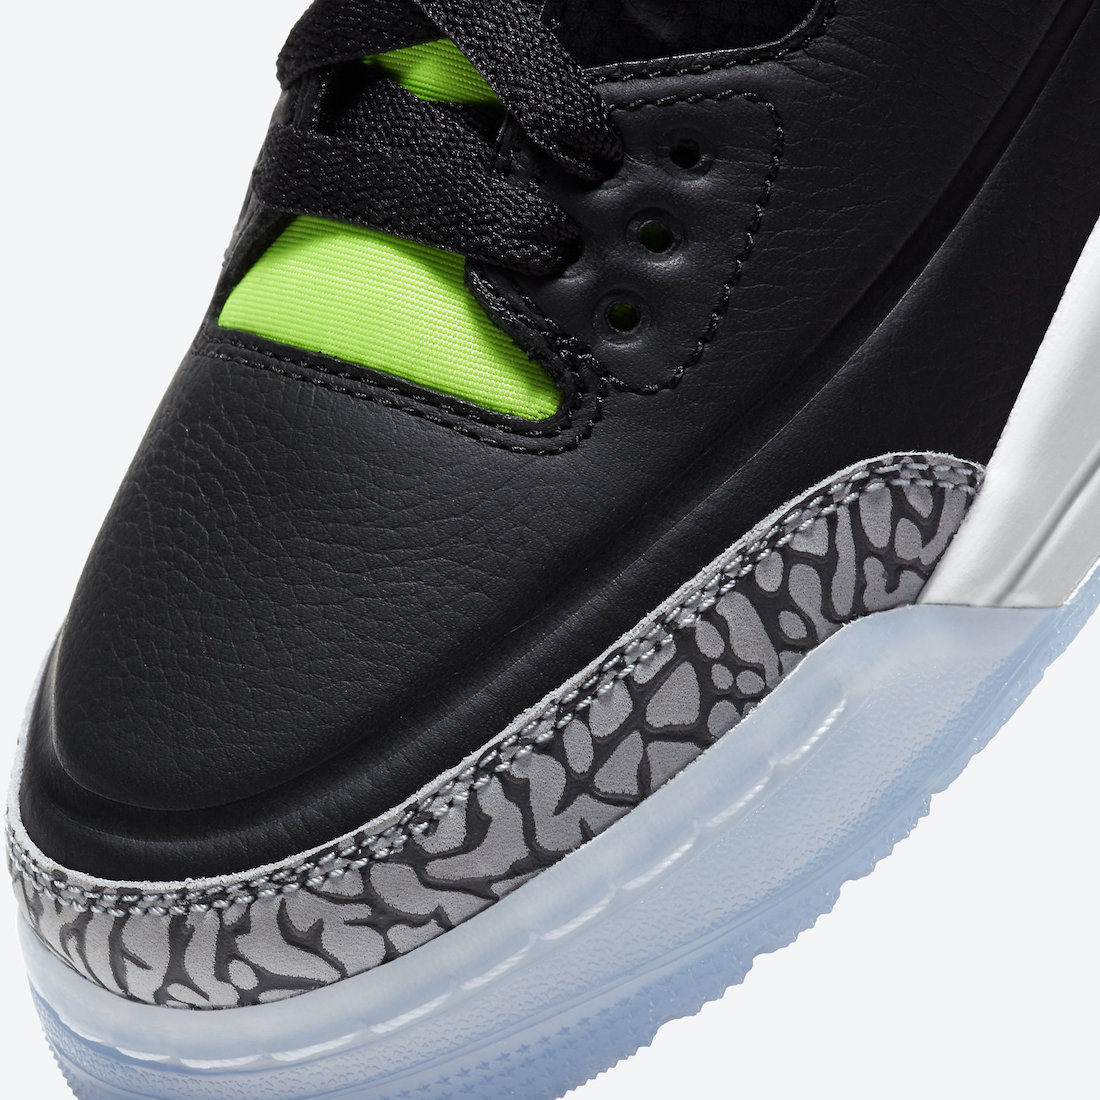 Air Jordan 3 Electric Green Kids DA2304-003 Release Date - SBD